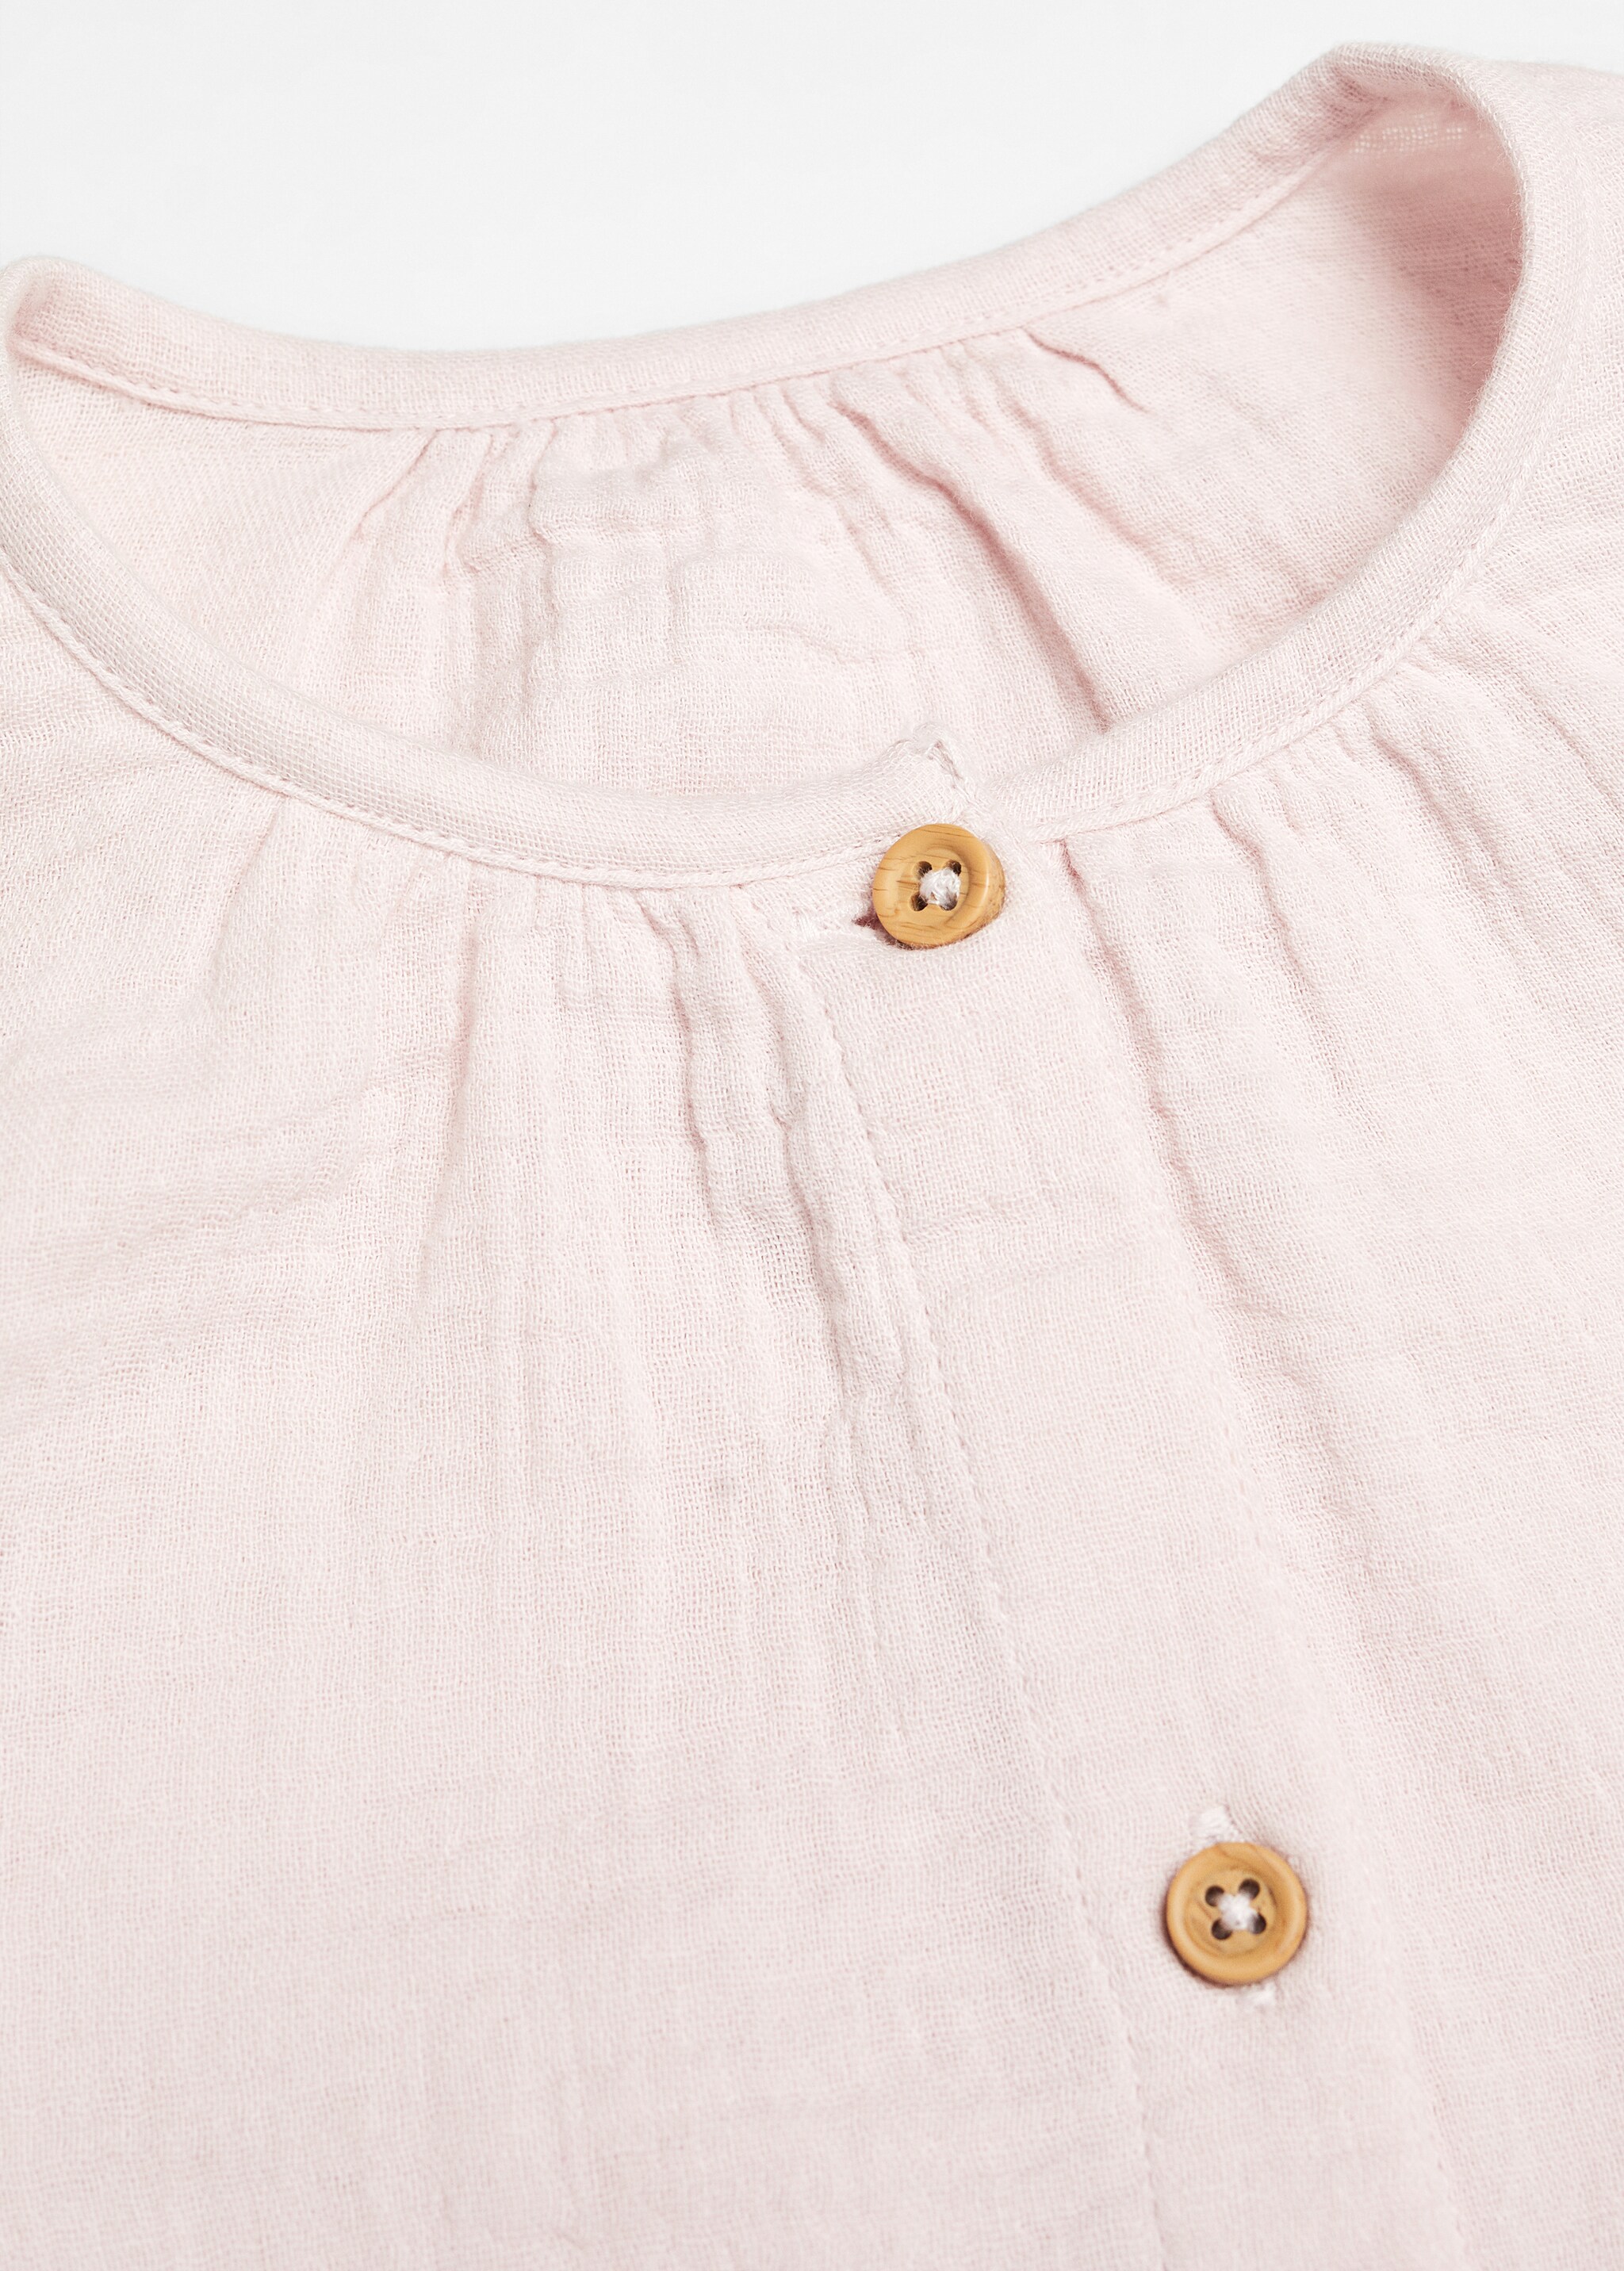 Блузка с вышивкой - Деталь изделия 8